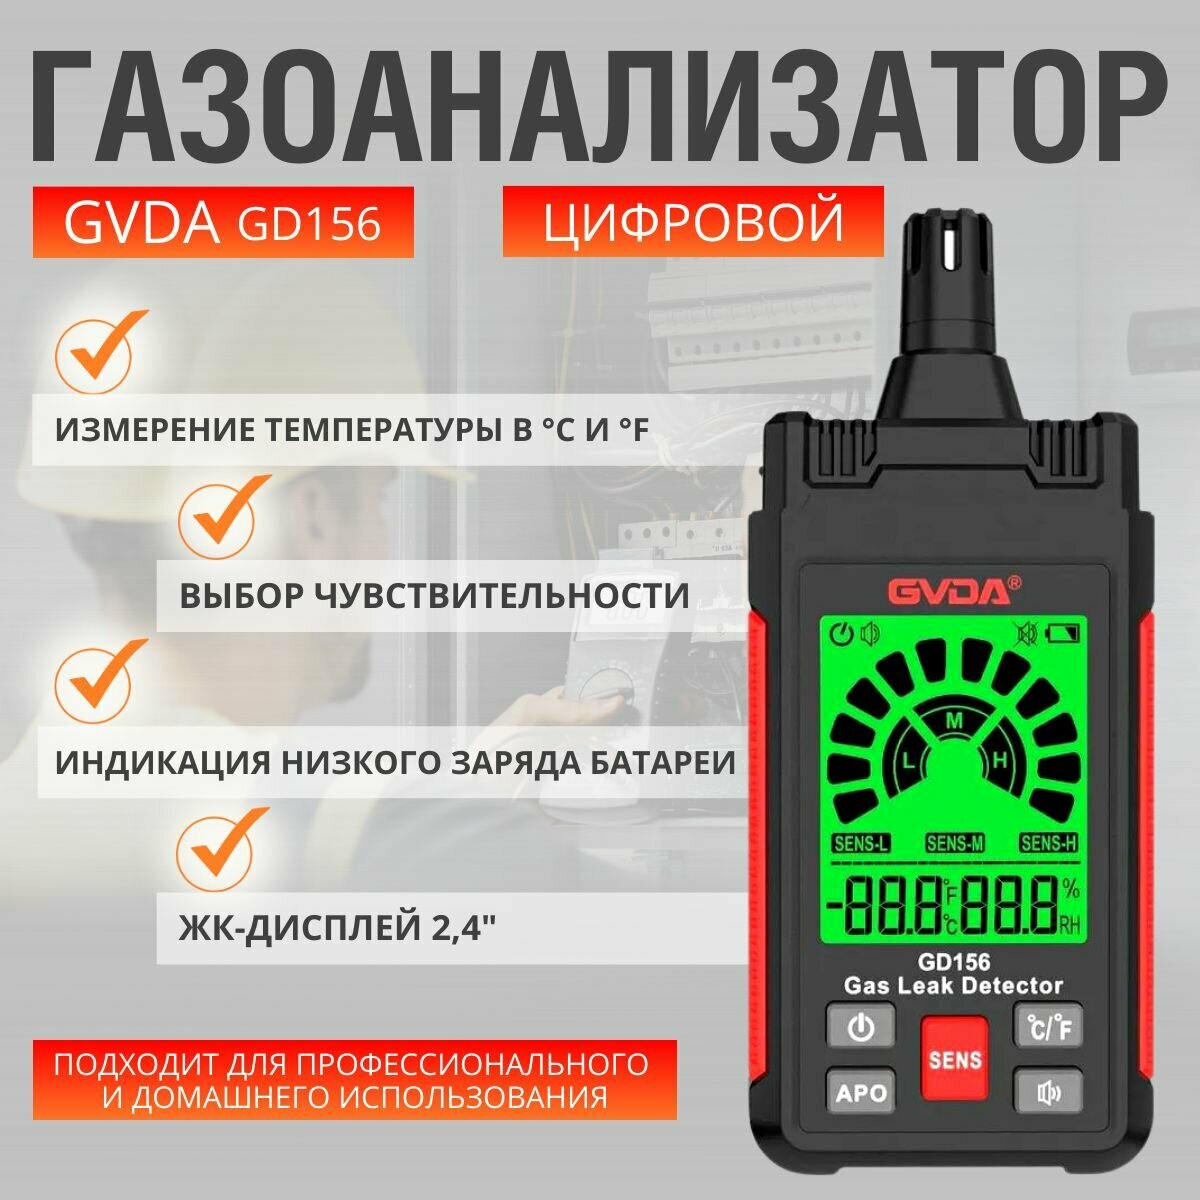 Газоанализатор GVDA GD156, цифровой компактный детектор утечки газа